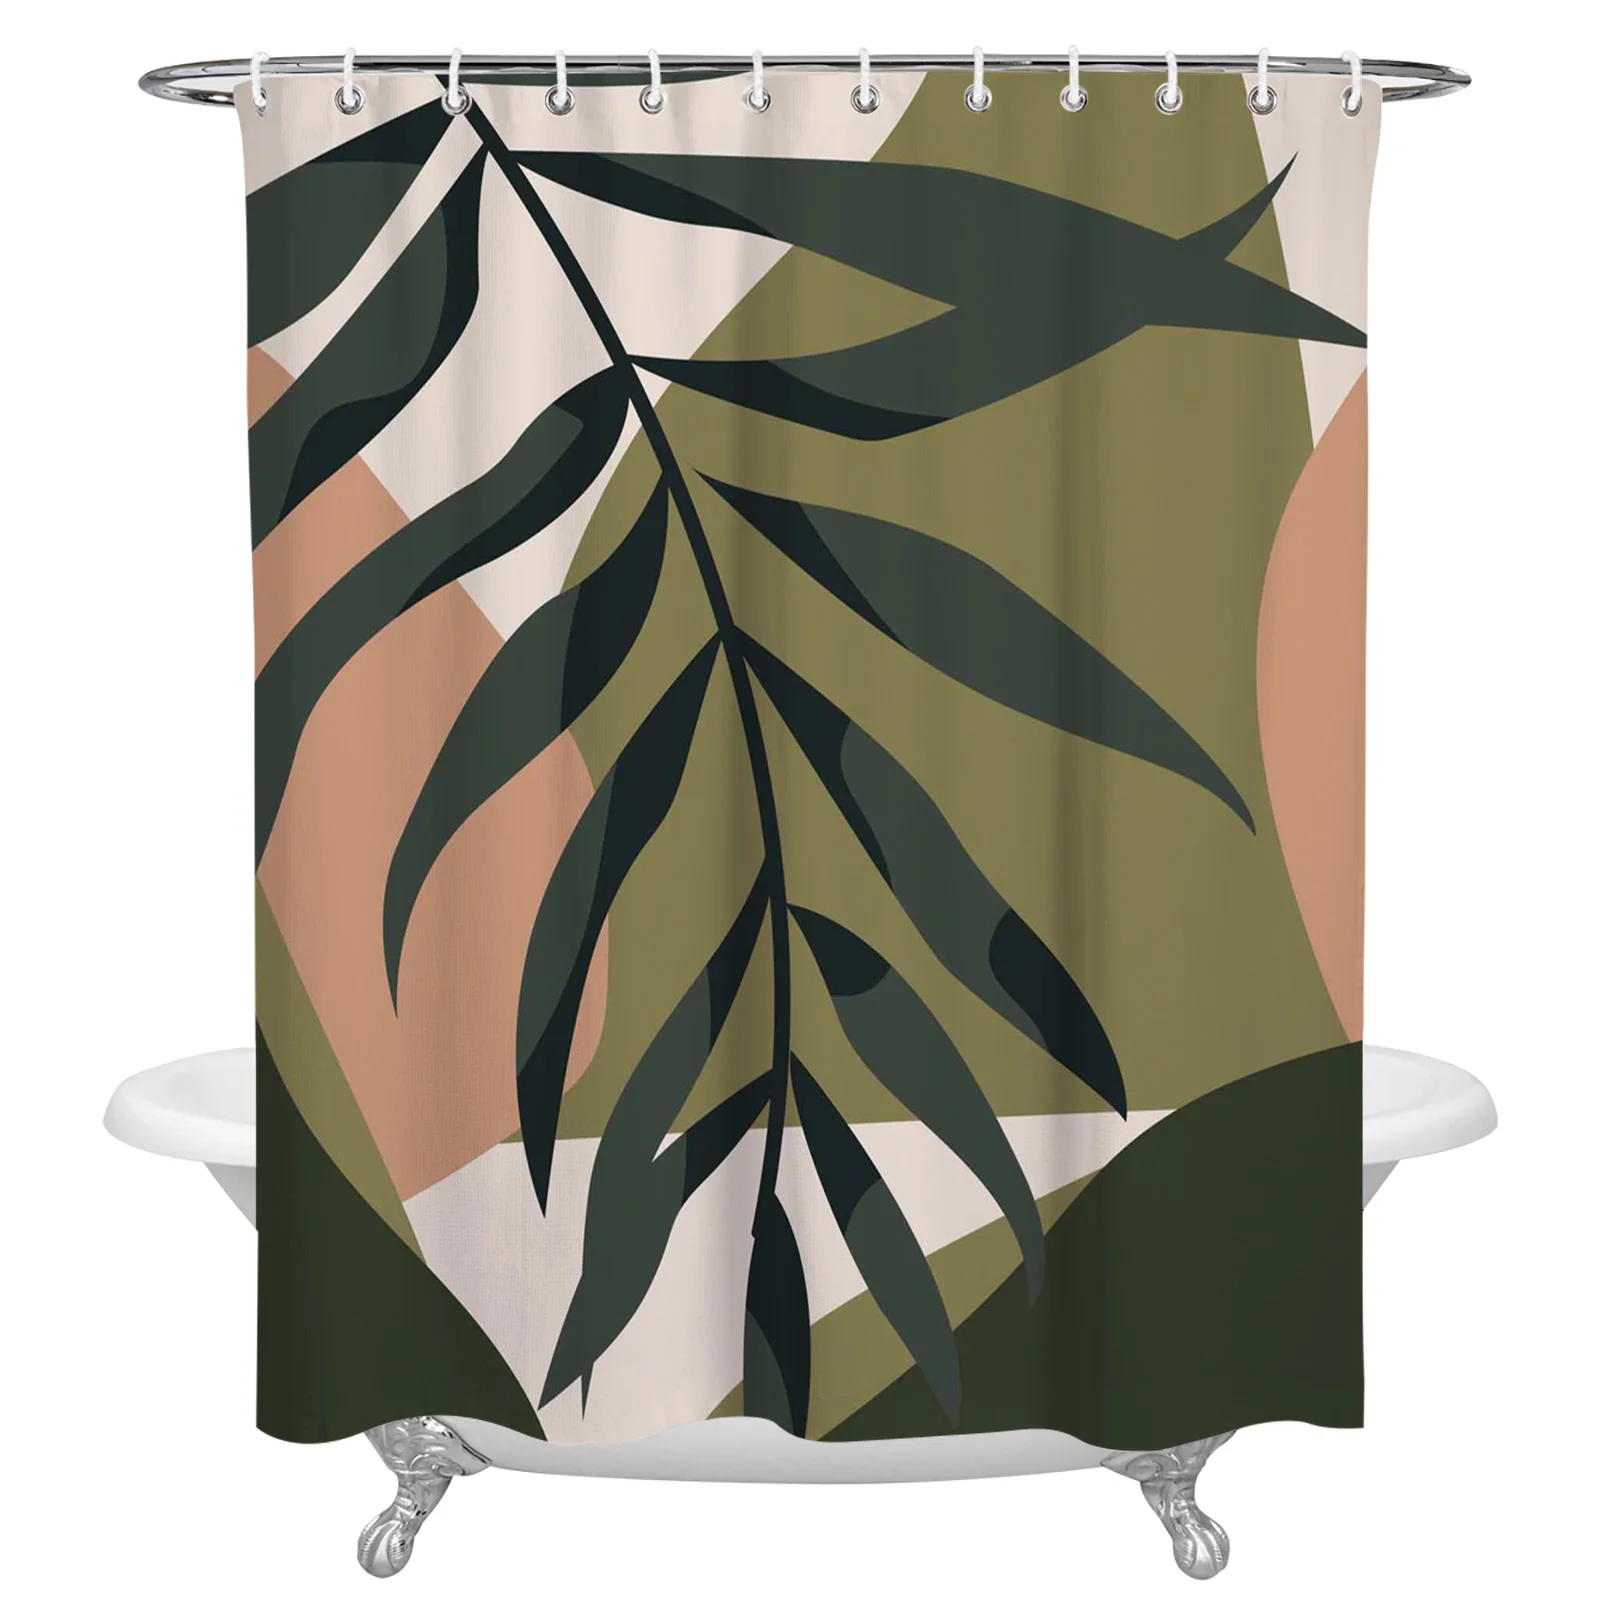 

Тропические растения листья силуэт душевая занавеска для дома ванна декоративная Водонепроницаемая занавеска для ванной из полиэстера